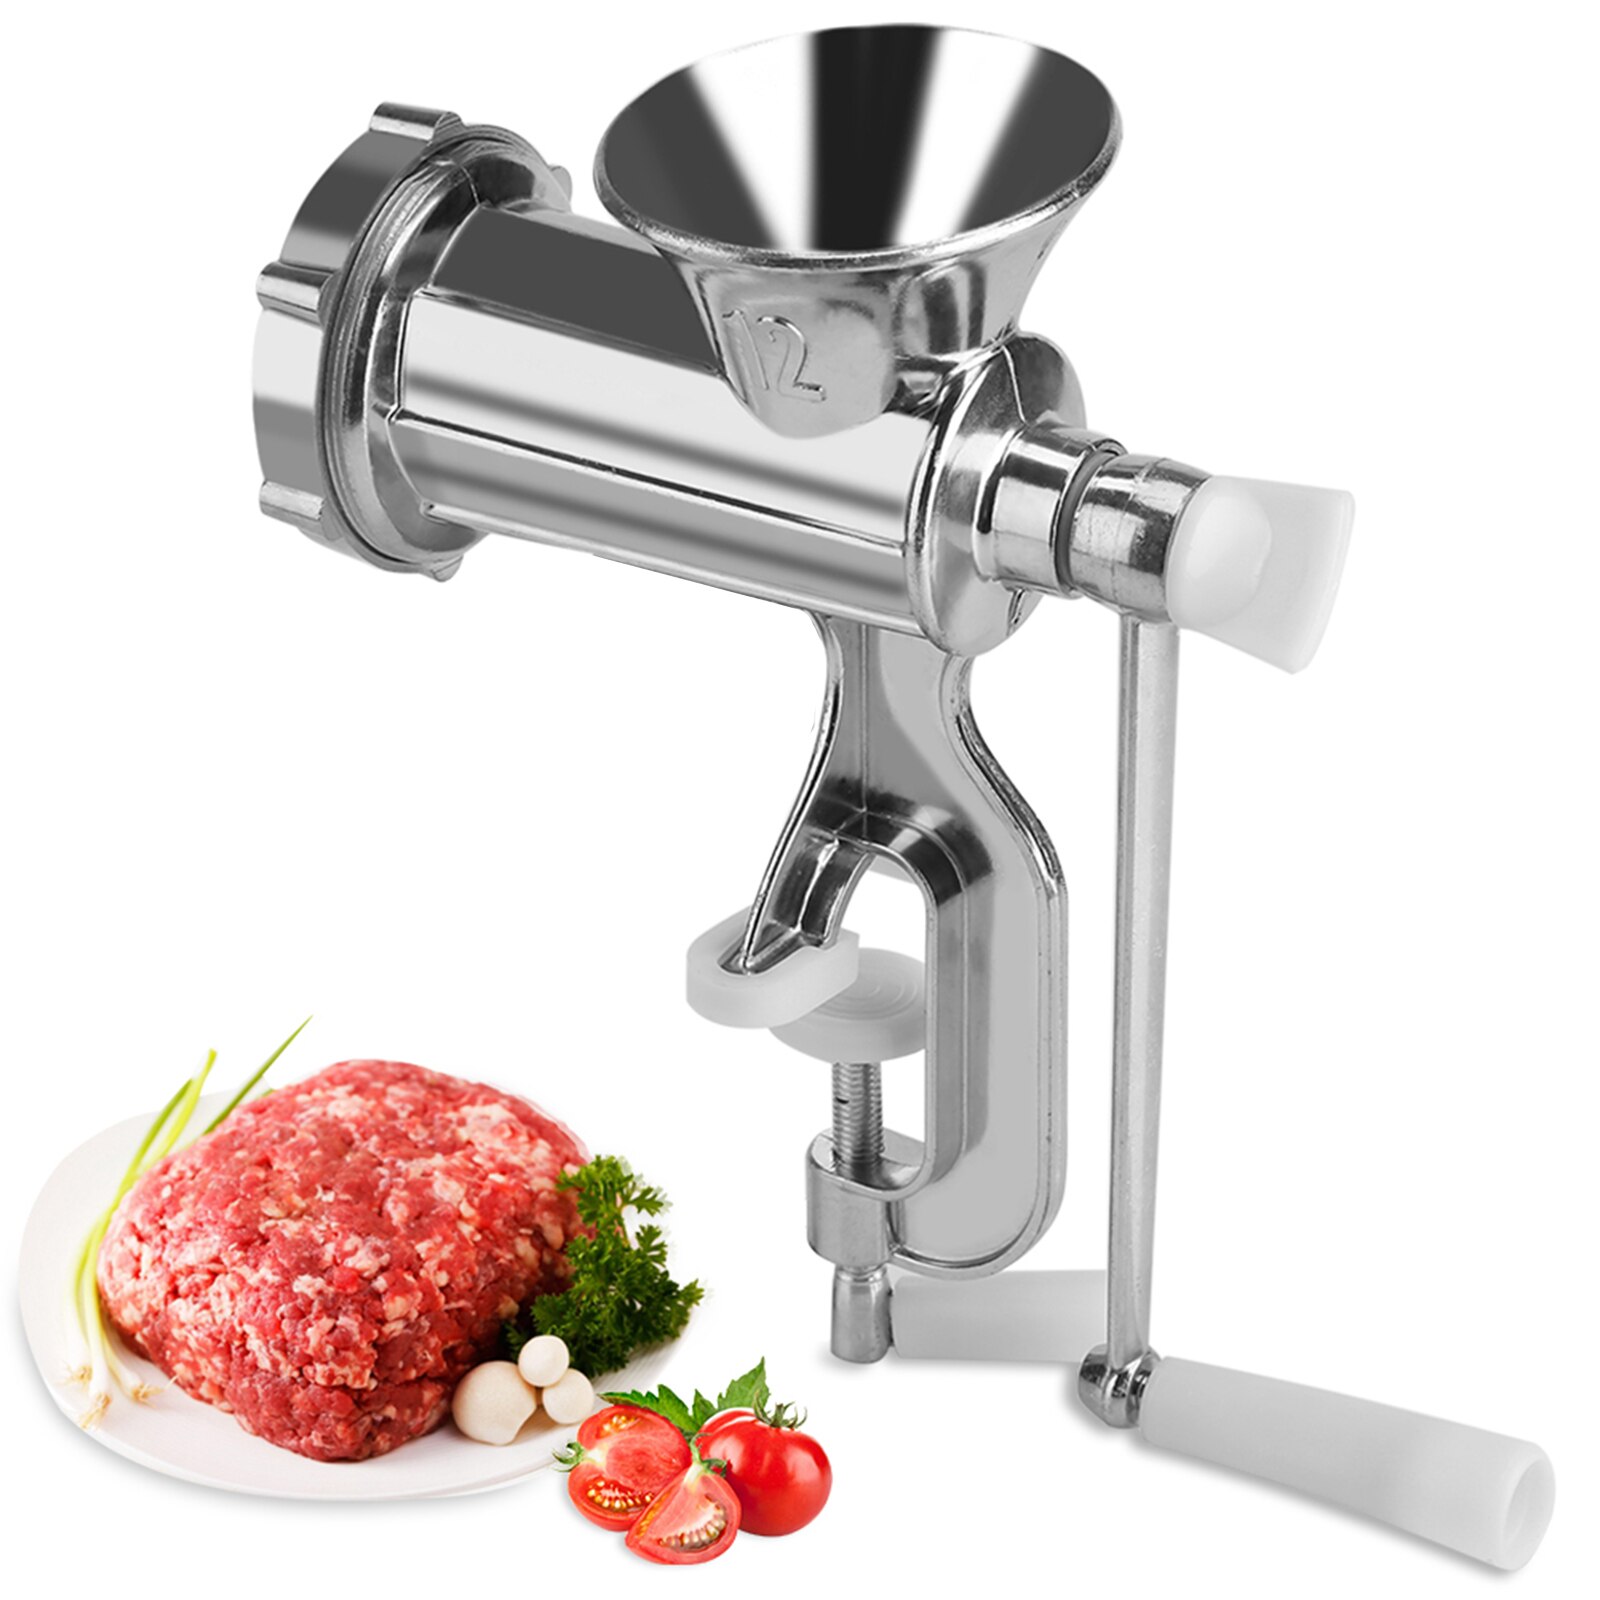 Vleesmolen Handmatige Multifunctionele Vleesmolen Chopper Vleesmolen Worst Maker Home Kitchen Tool Vlees Slijpmachines